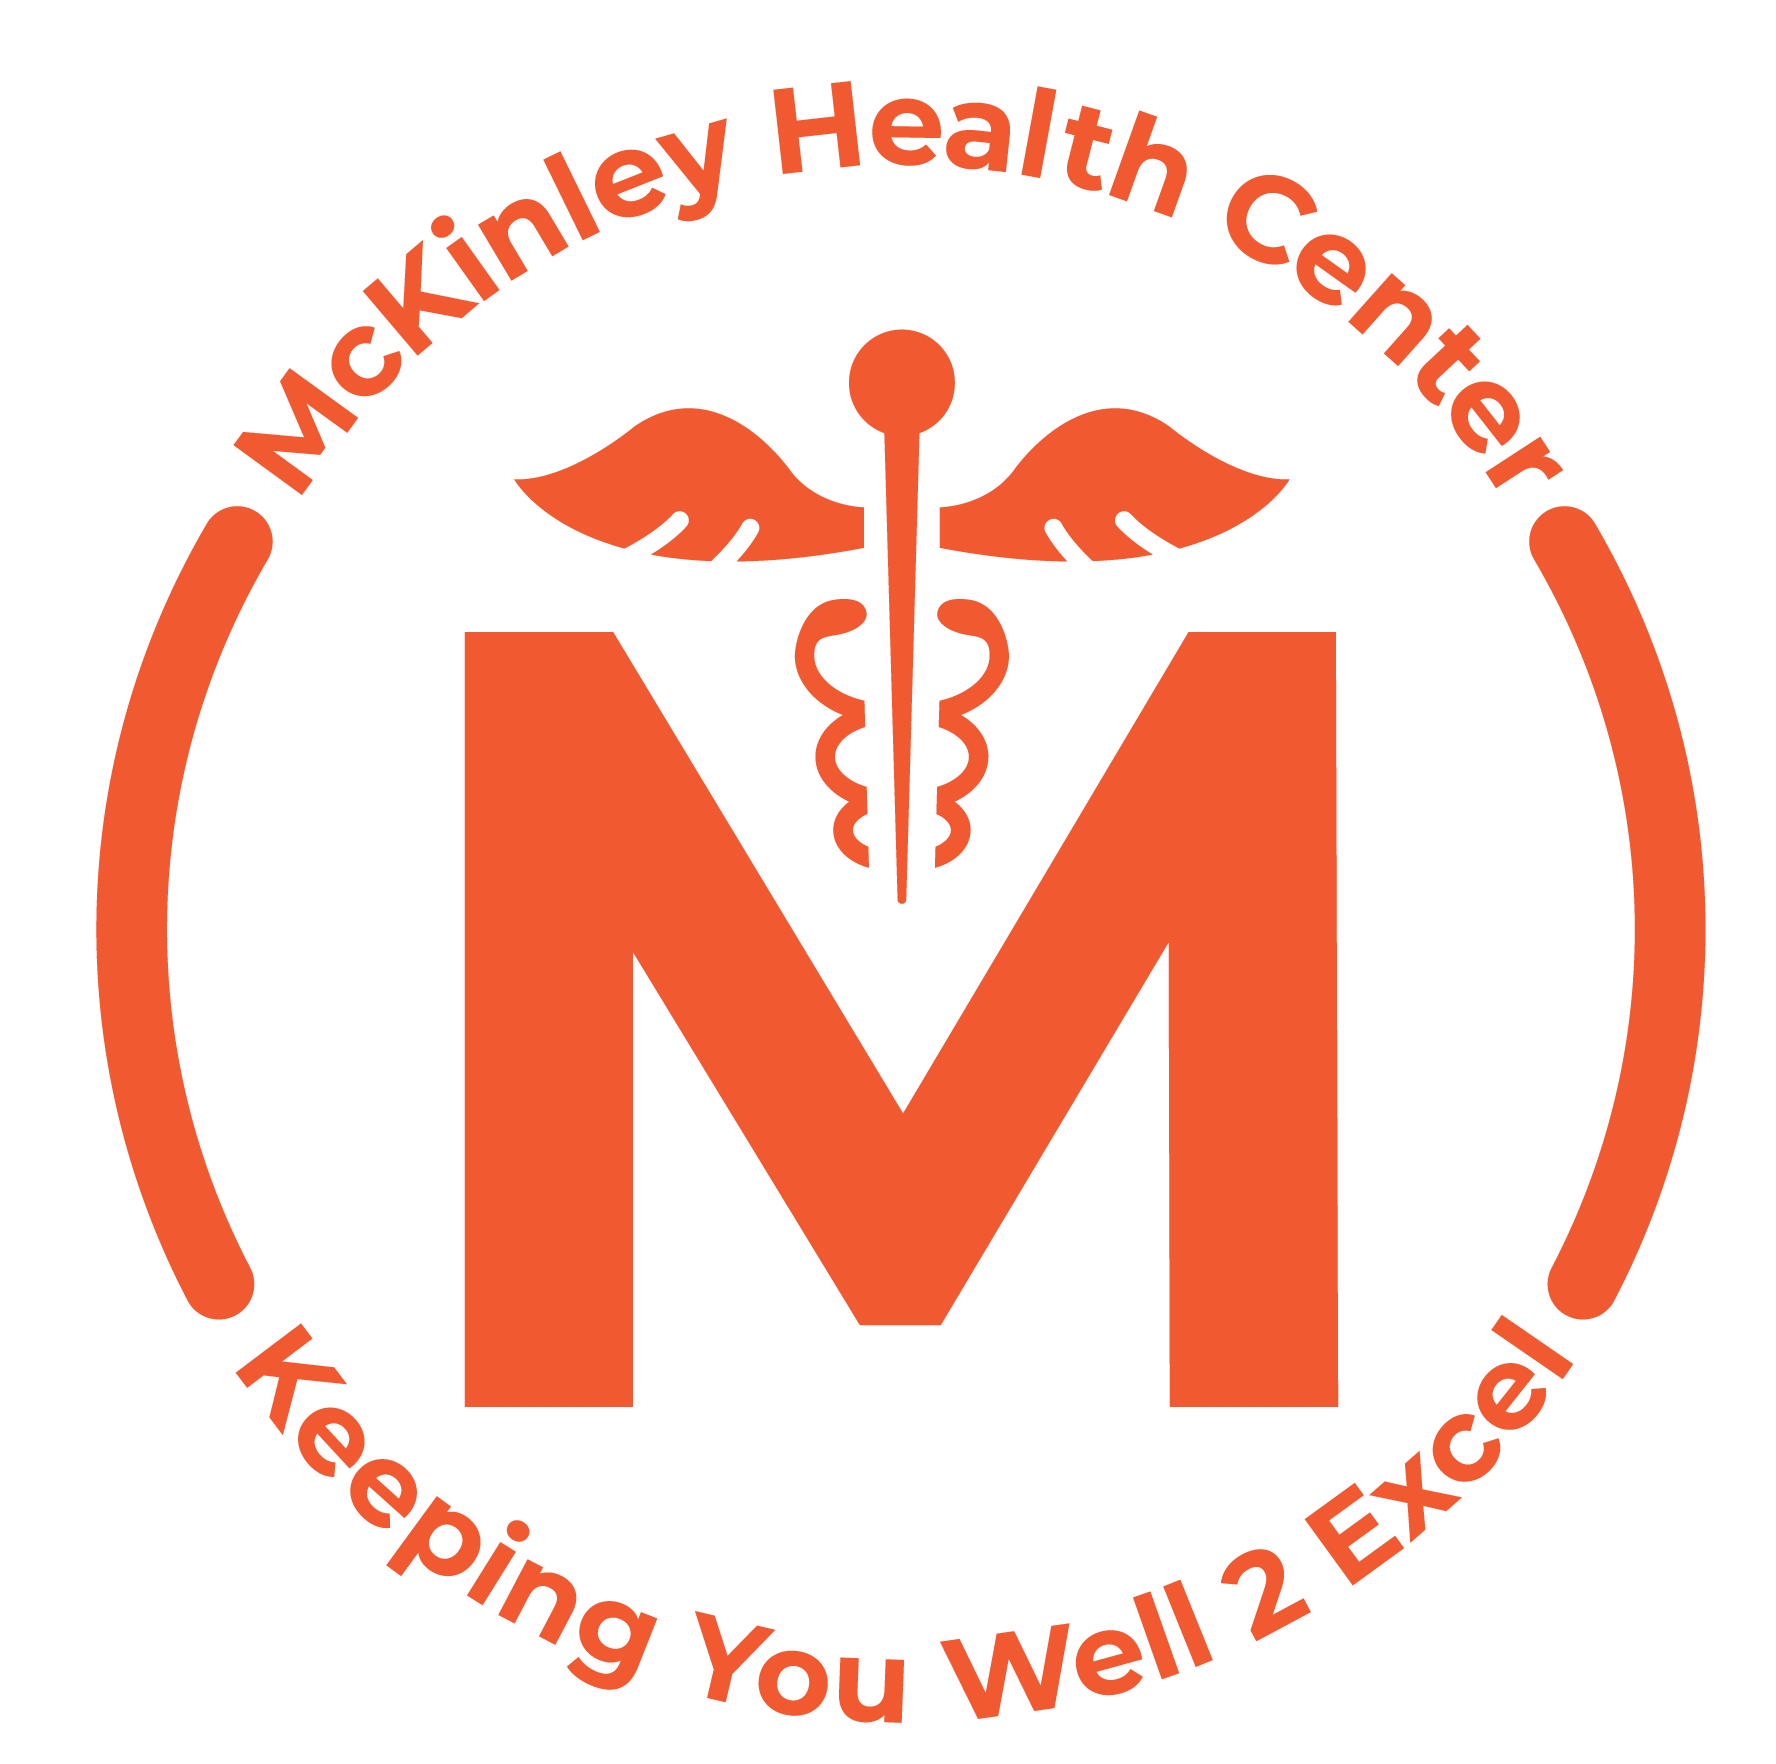 McKinley Health Center